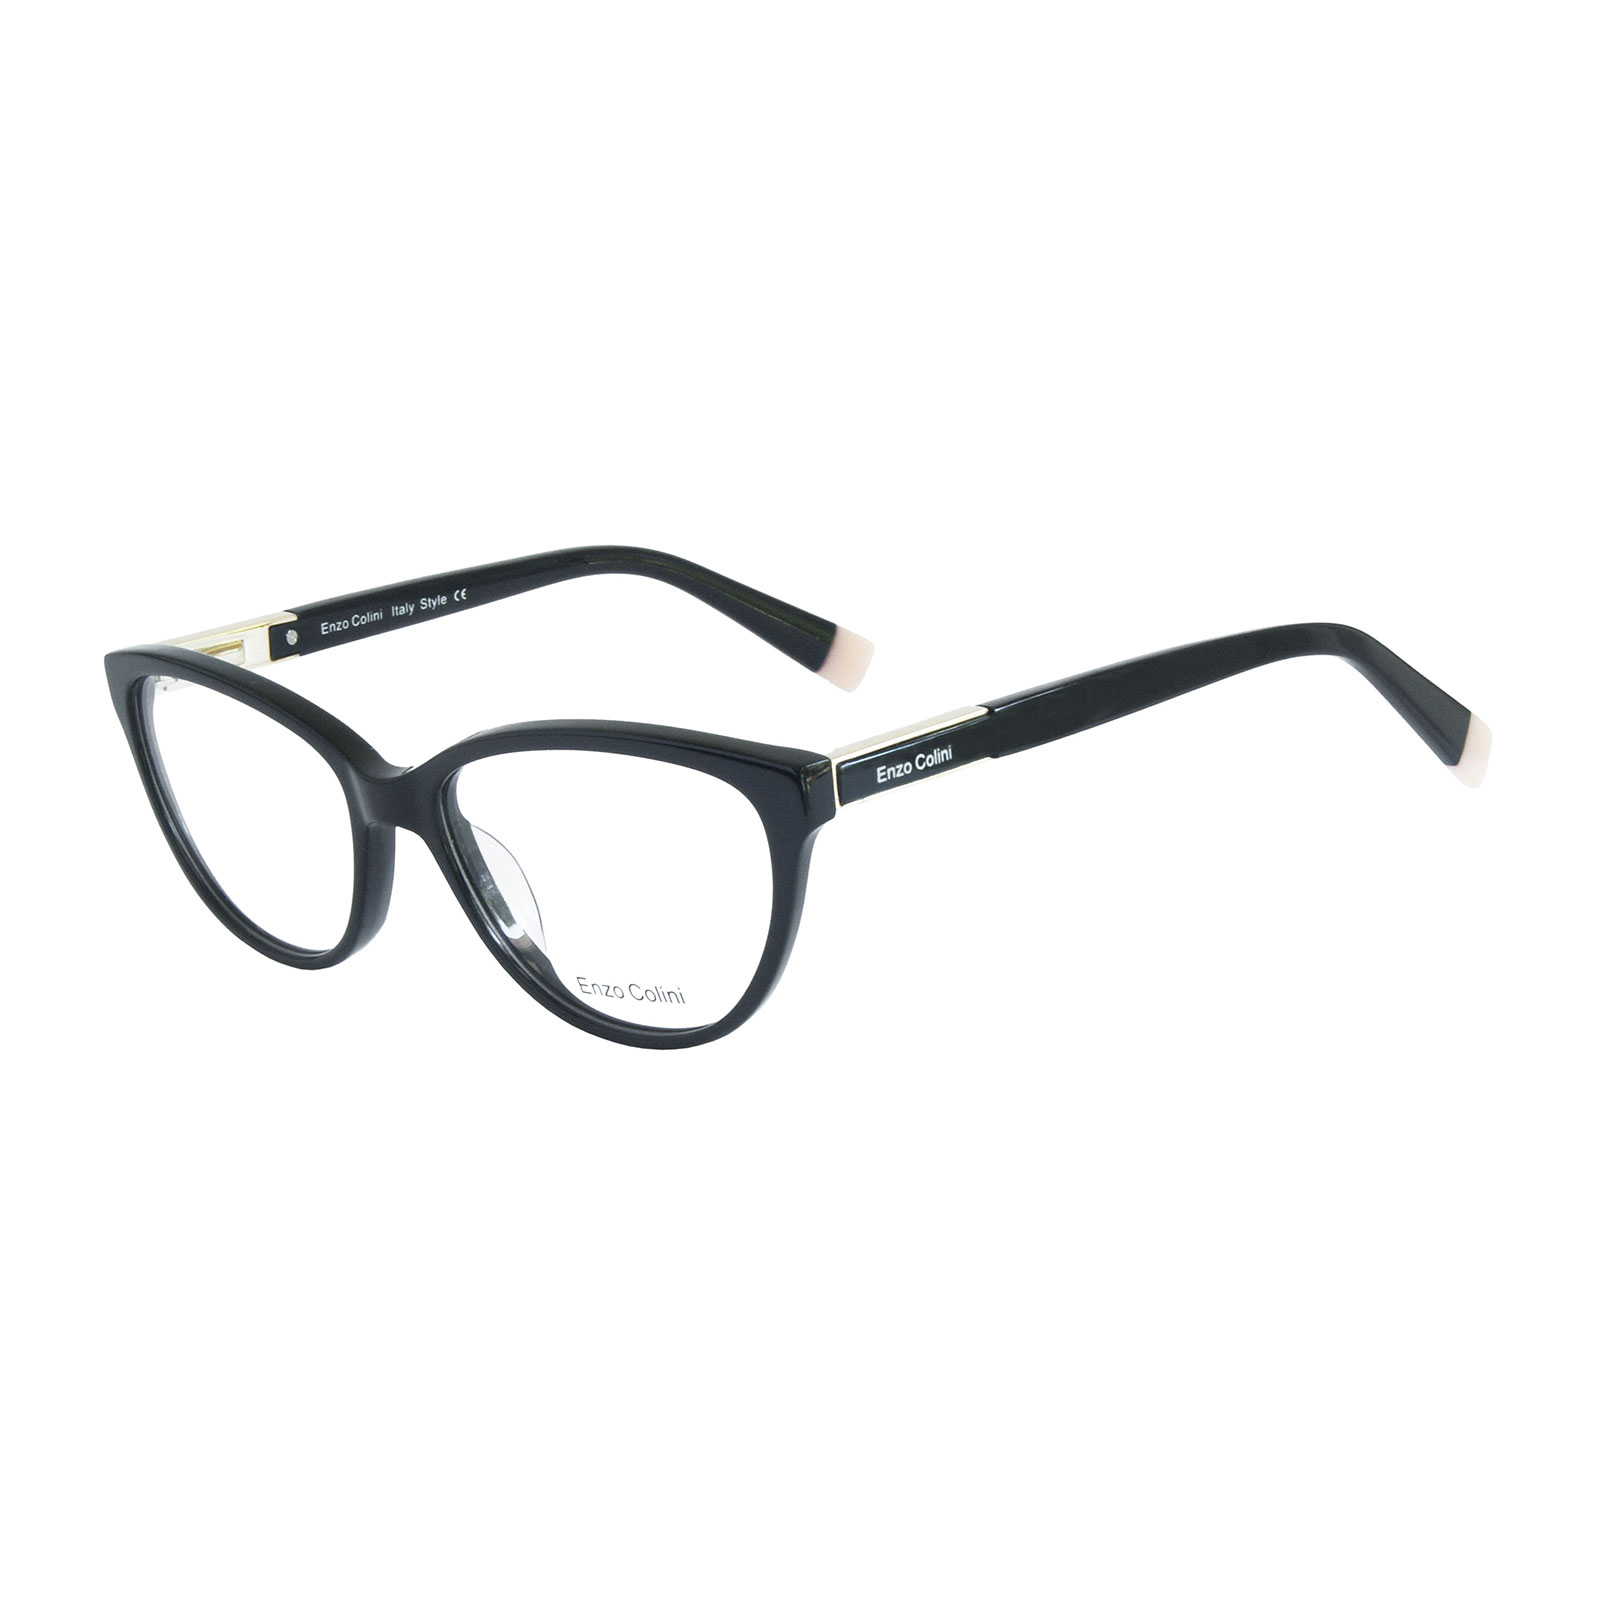 Oprawki okularowe Enzo Colini P880C02